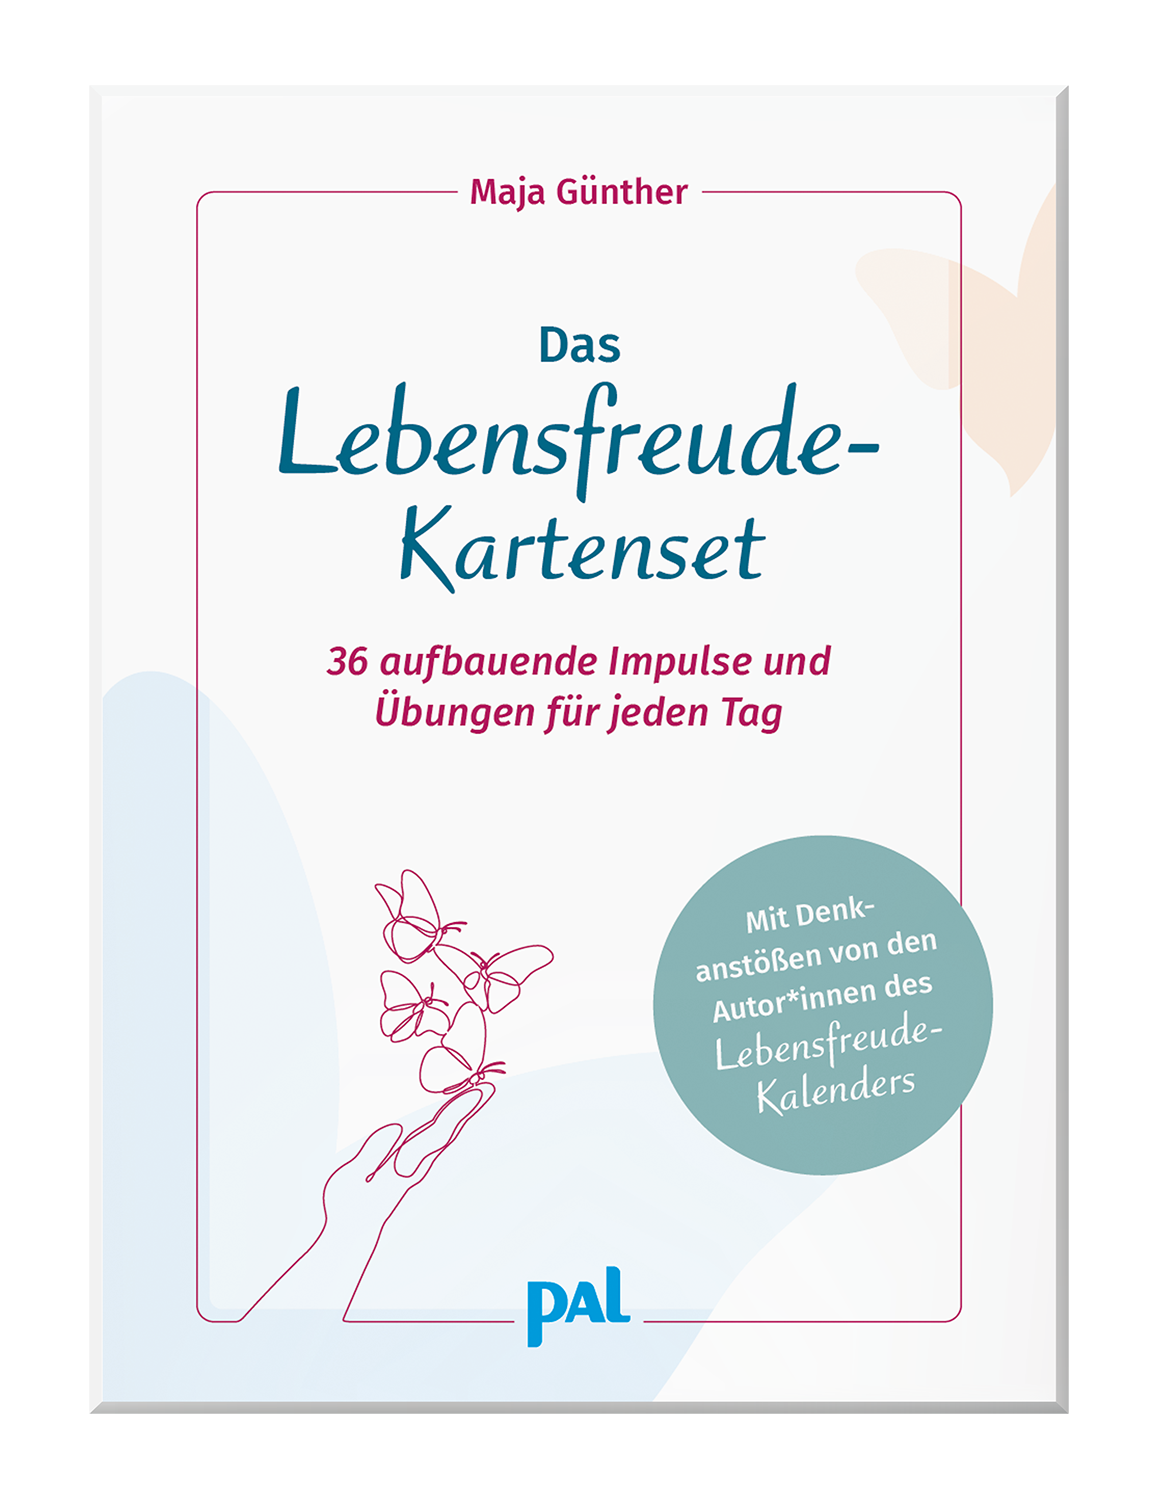 Lebensfreude-Kartenset Maja Günther Übungen und Impulse für jeden Tag